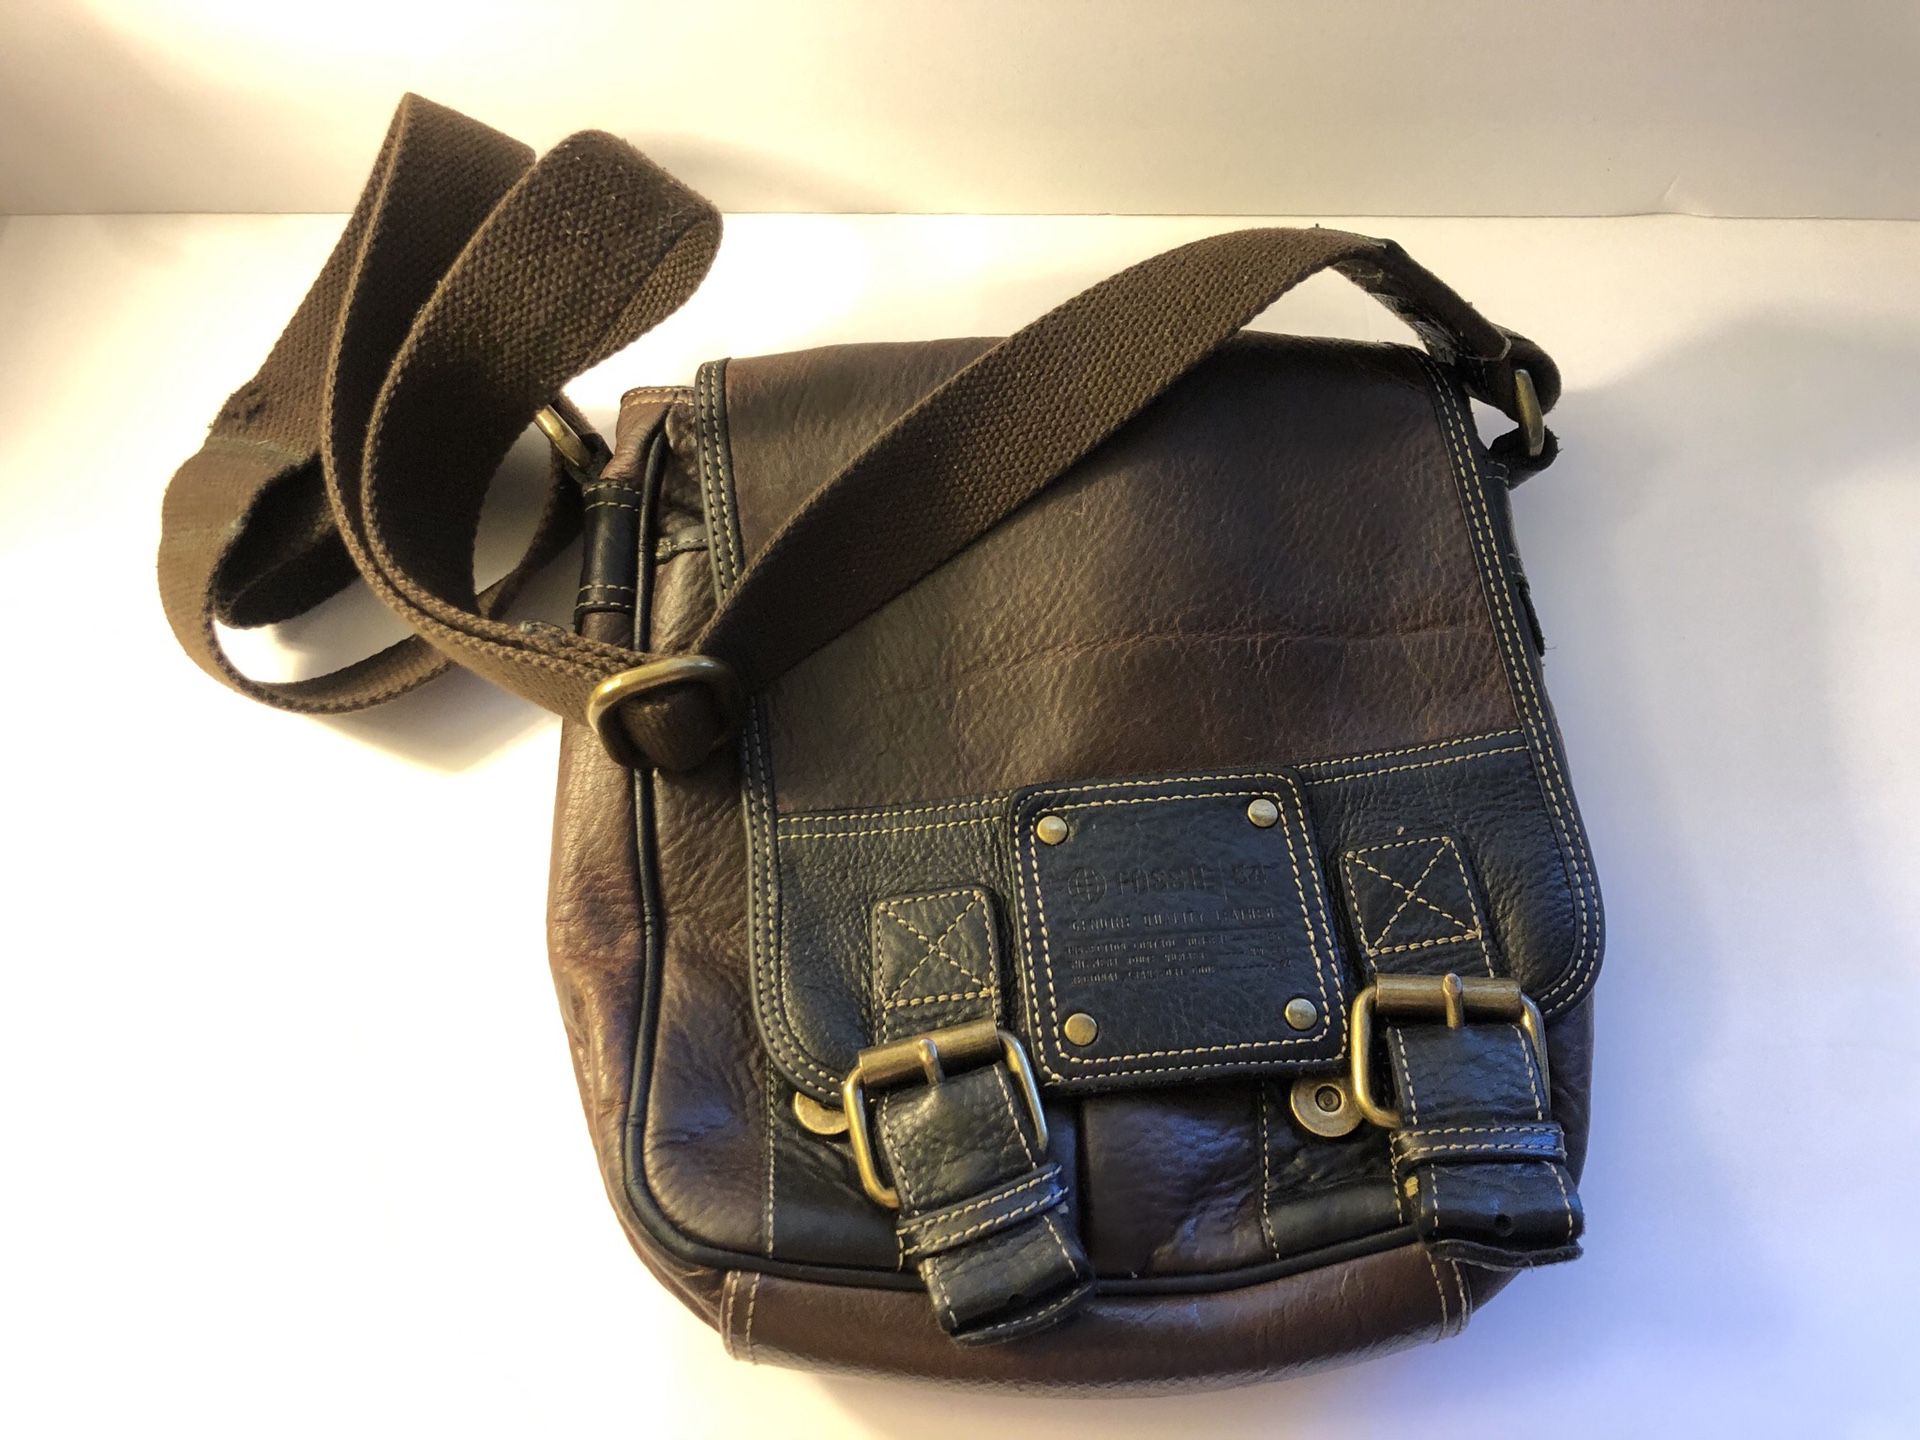 FOSSIL 54 Messenger Crossbody Shoulder Bag Pebbled Leather